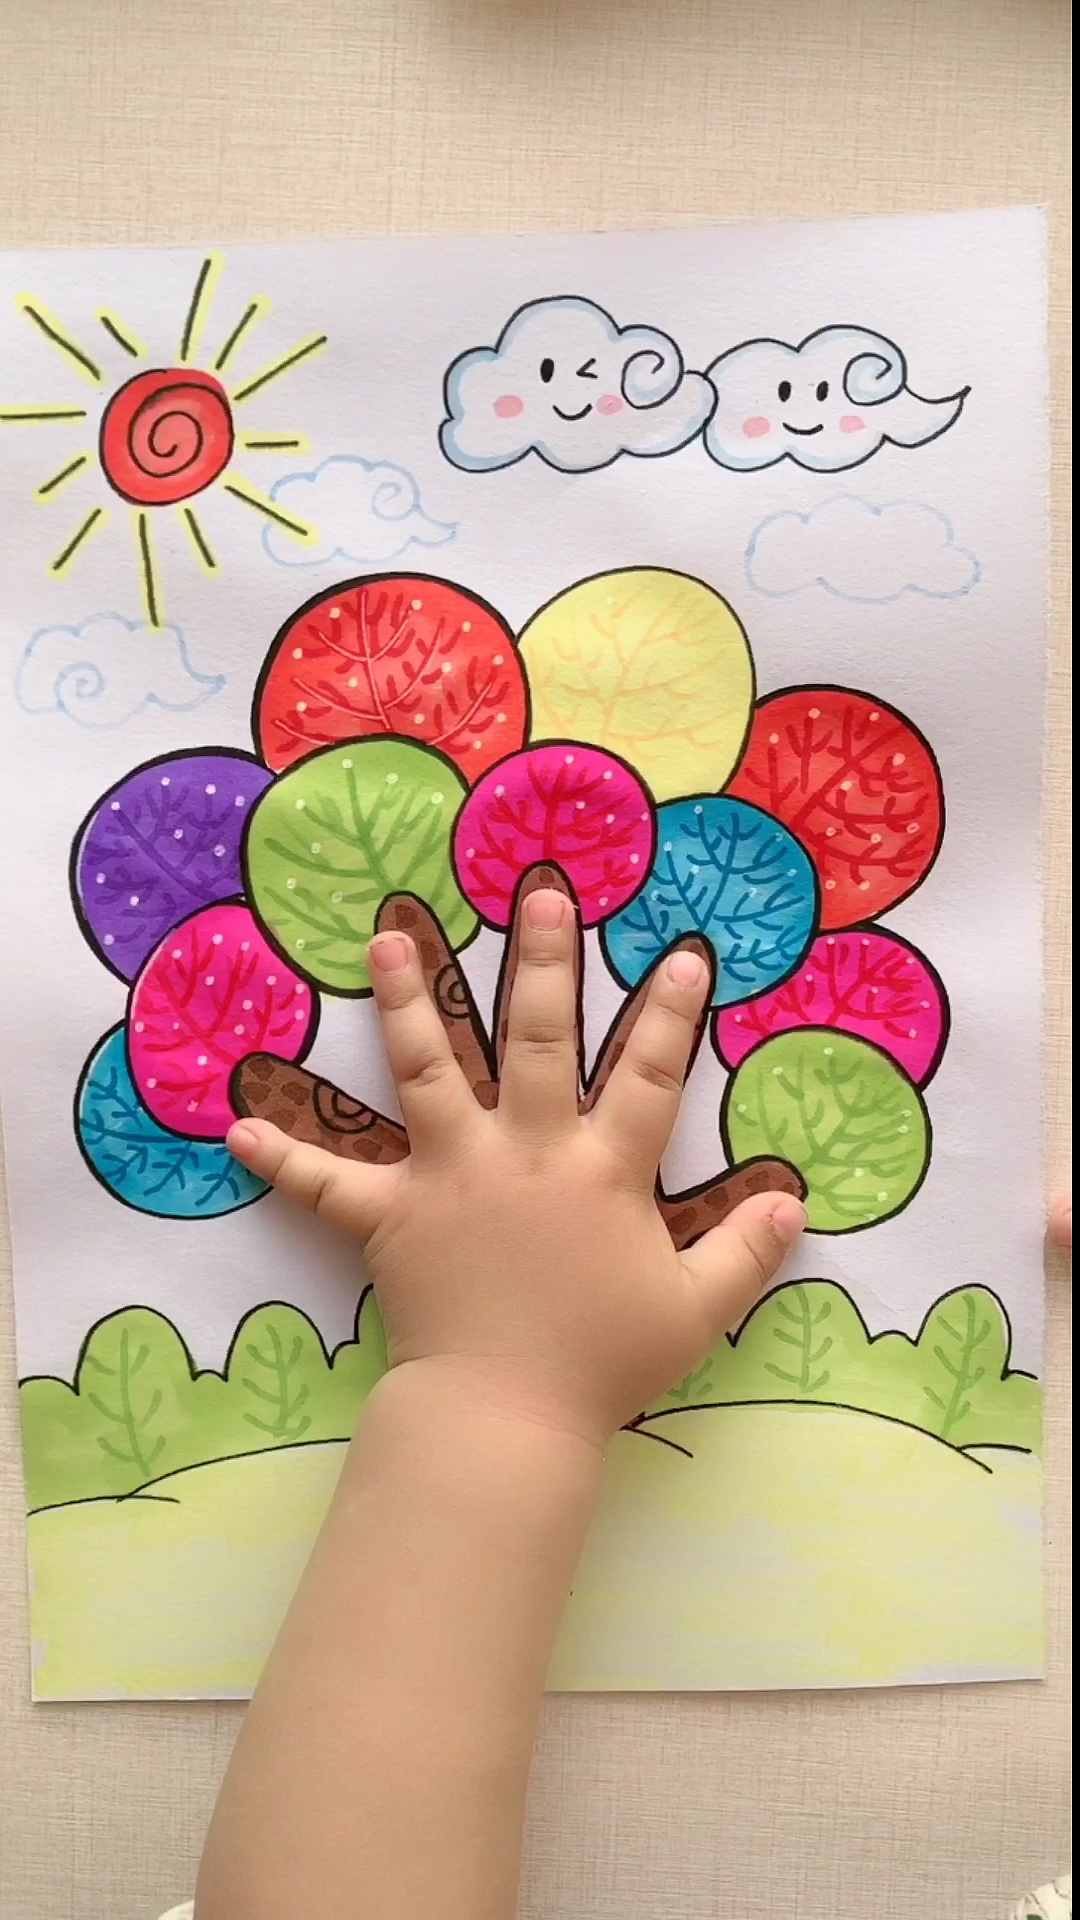 手掌树儿童创意画图片